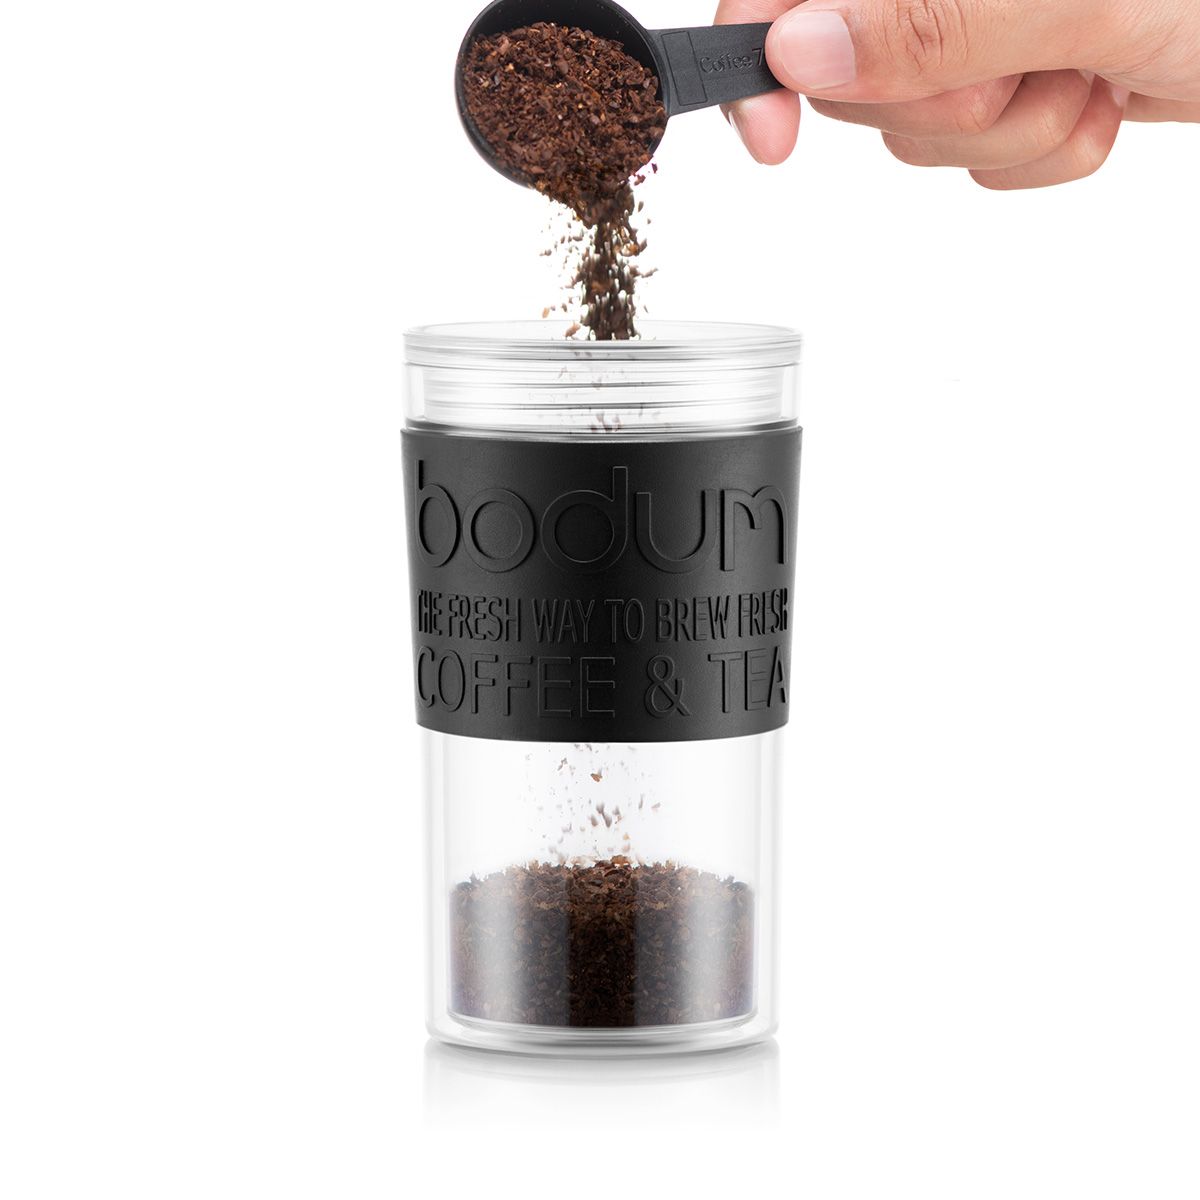 Bodum Reispers set koffiezetapparaat met extra deksel dubbel ommuur, zwart